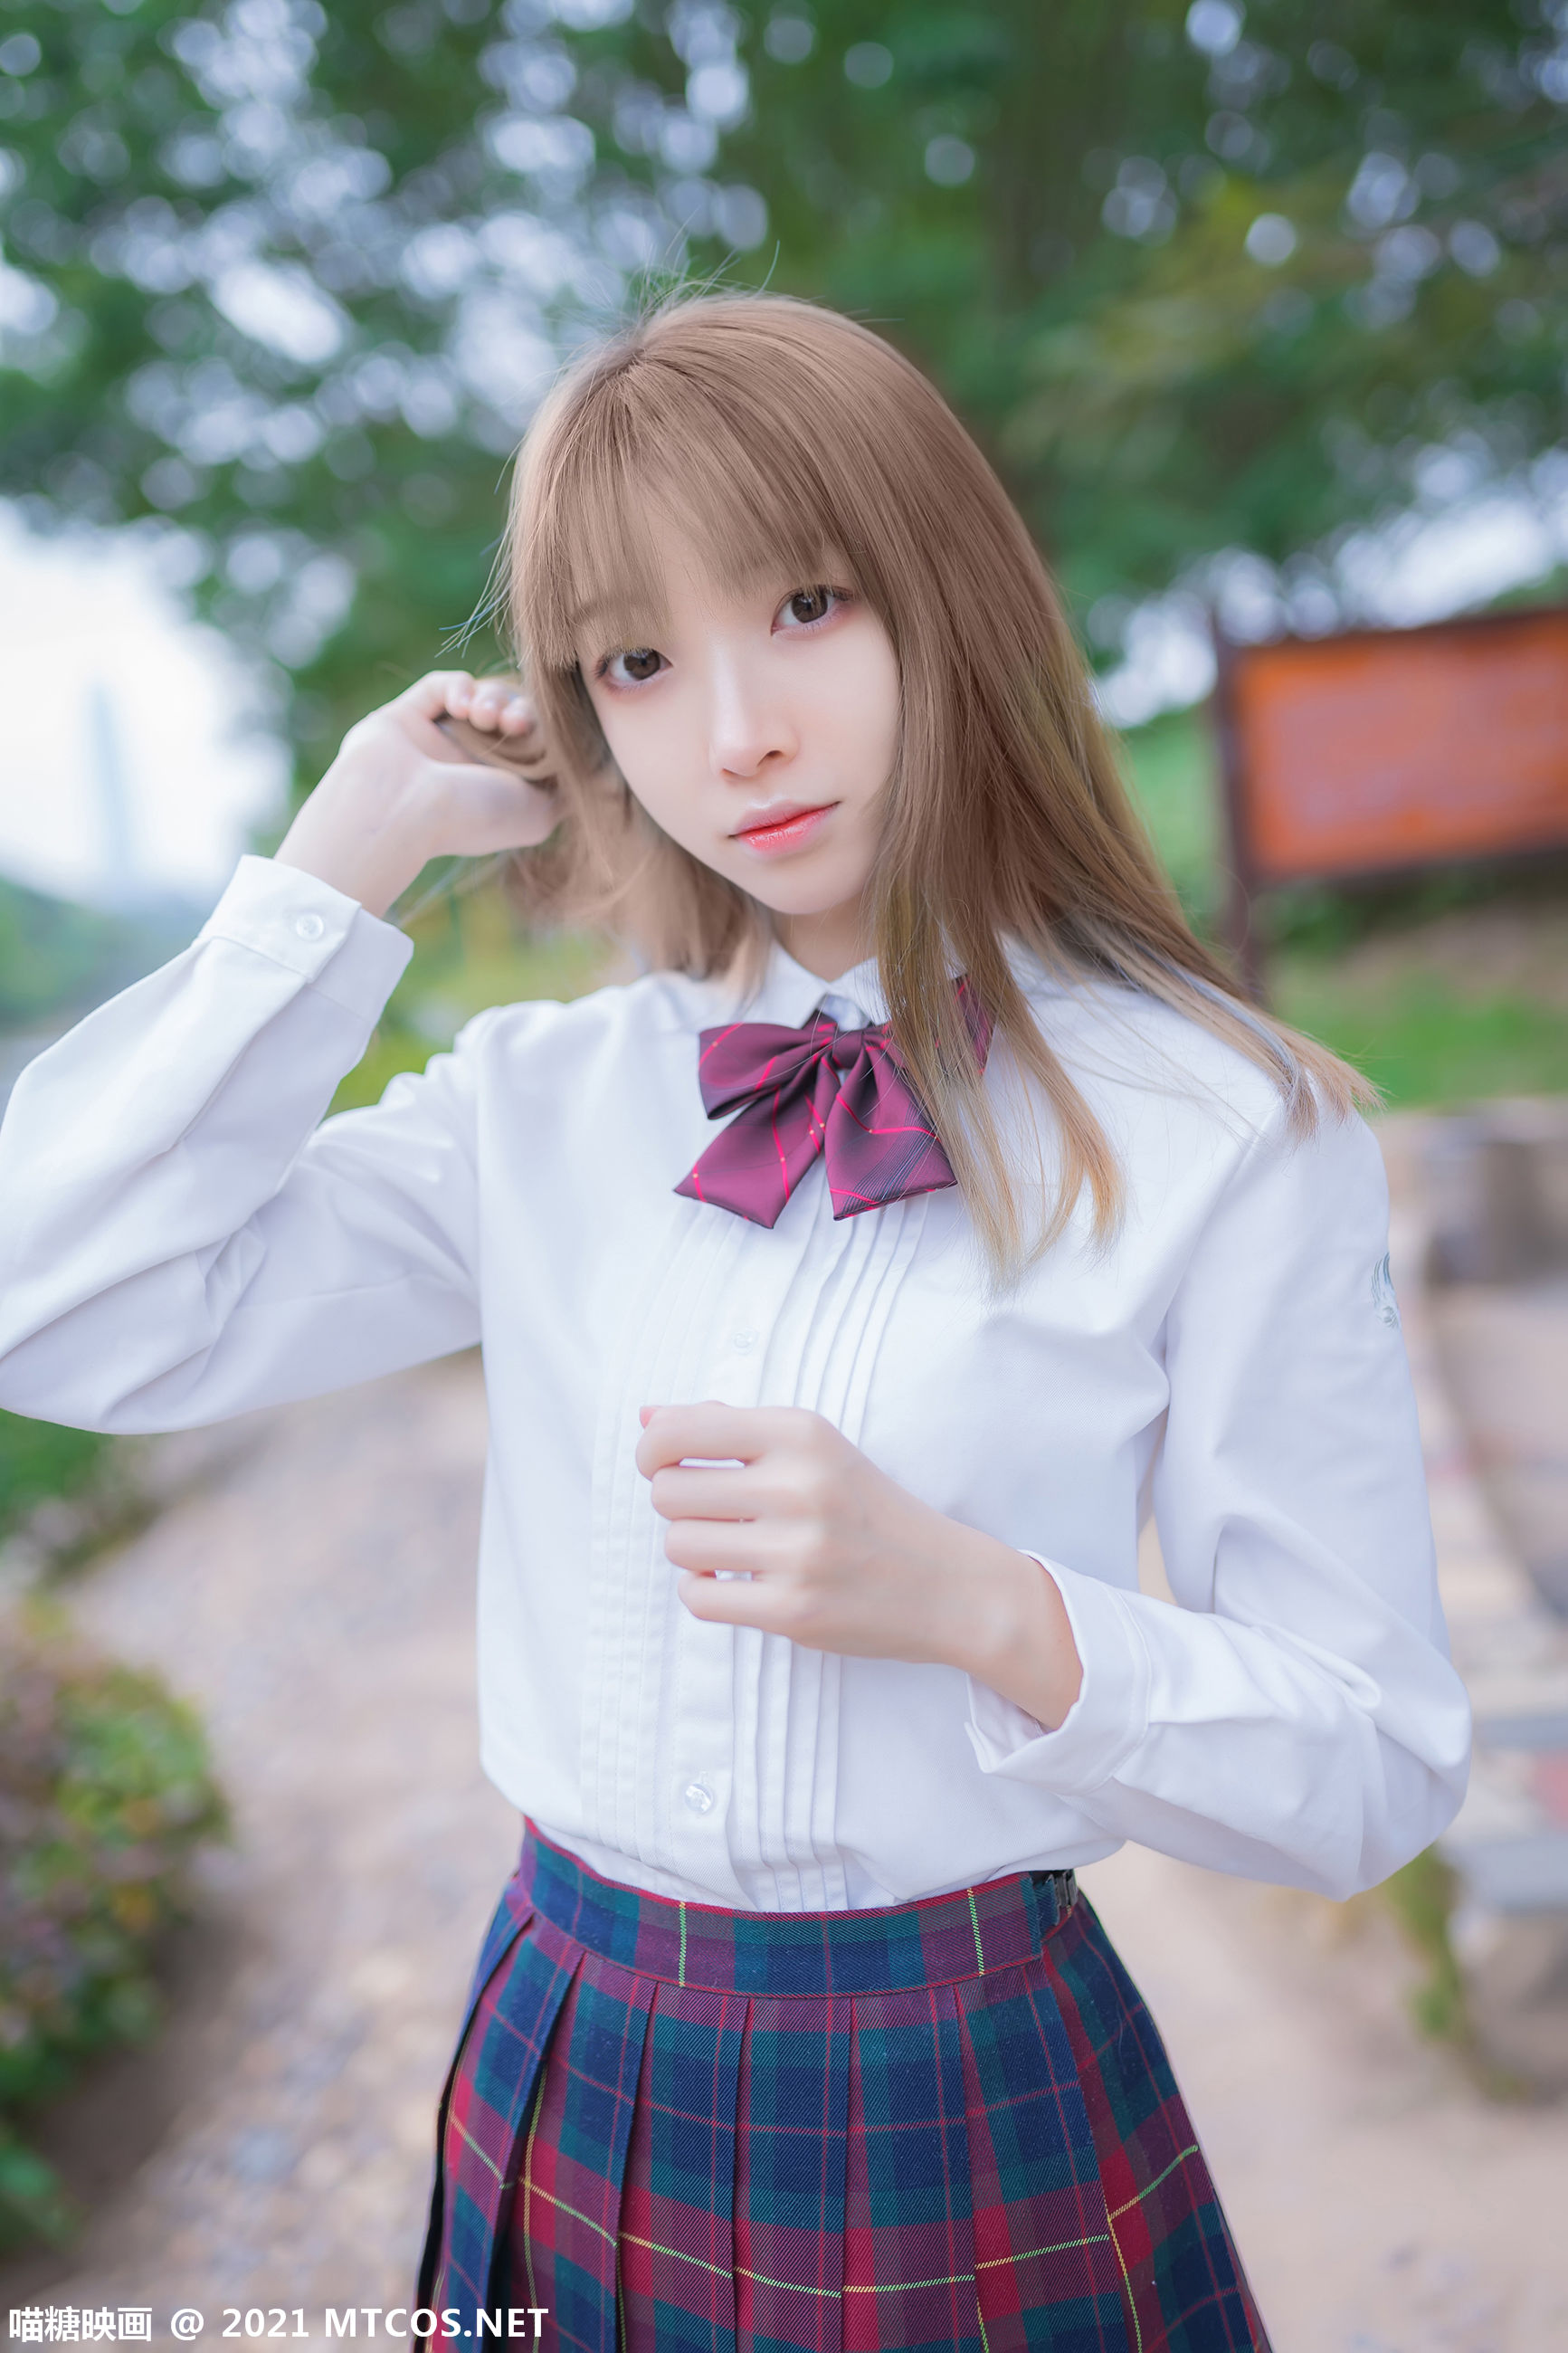 [糖] Vol.388 outdoor uniform photo set